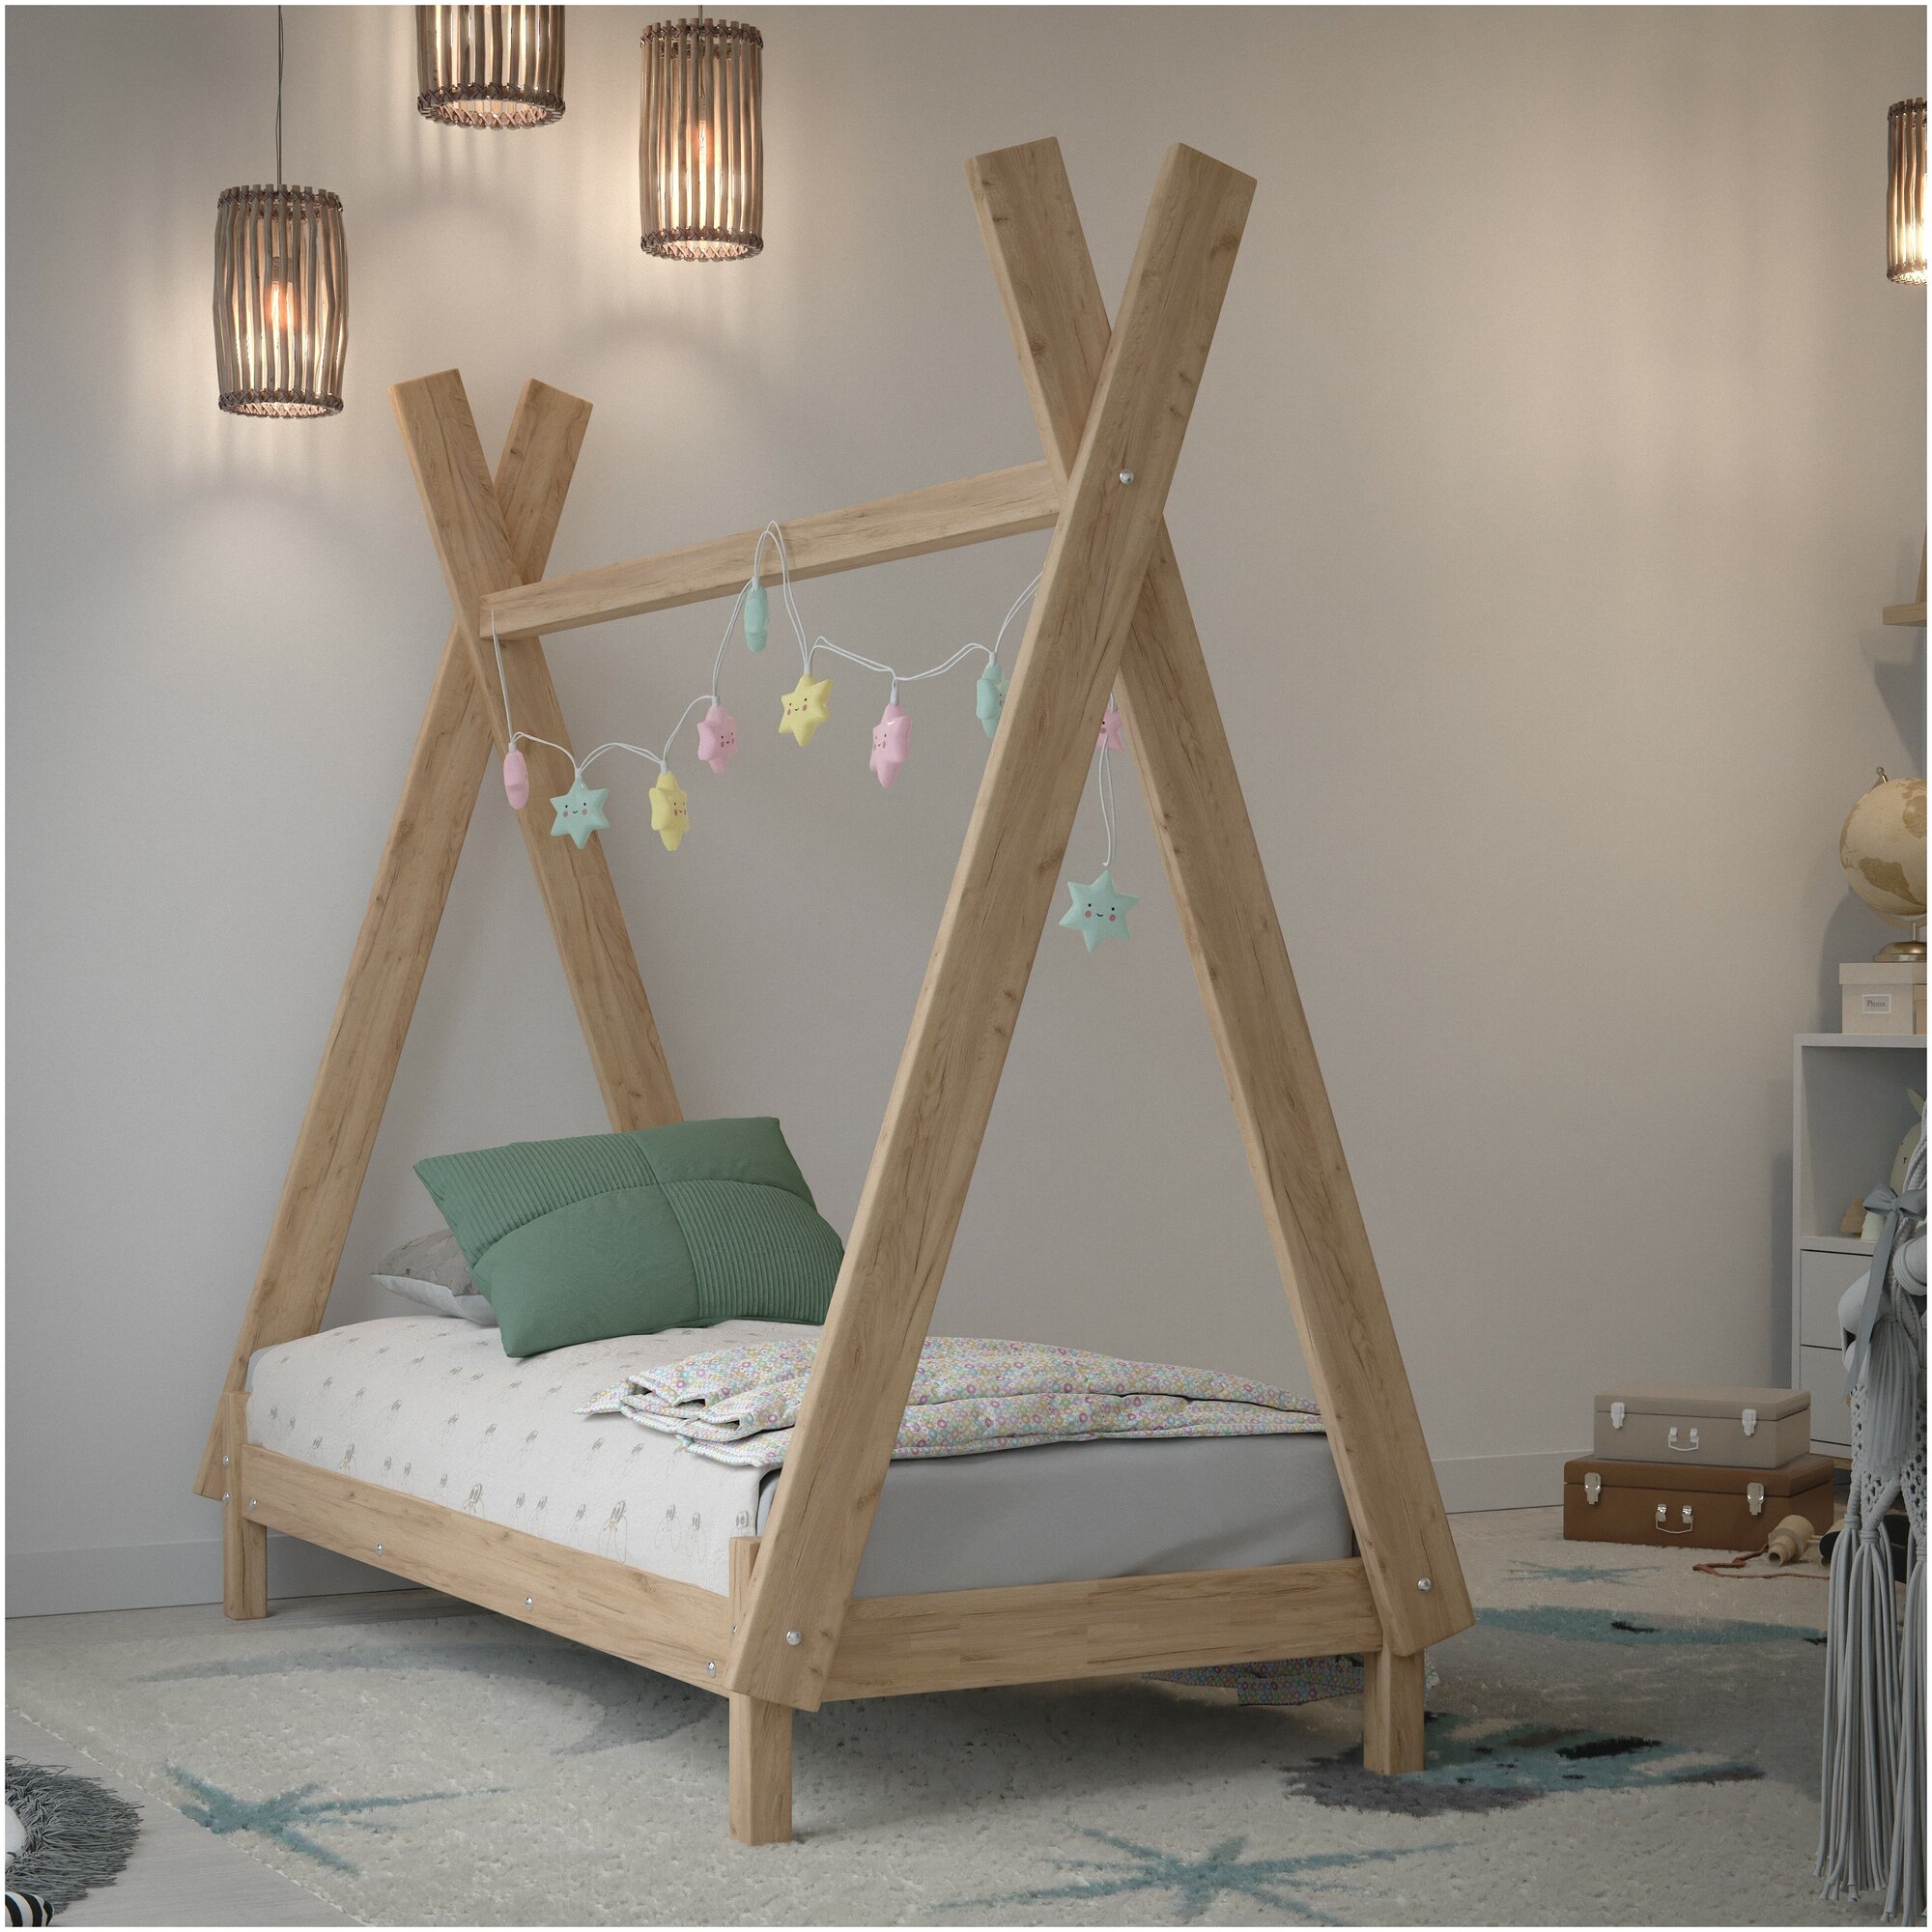 Детская кровать 190x70/ Кровать односпальная деревянная «ВигВам» GREEN-LITE / Односпальная подростковая кровать одноярусная